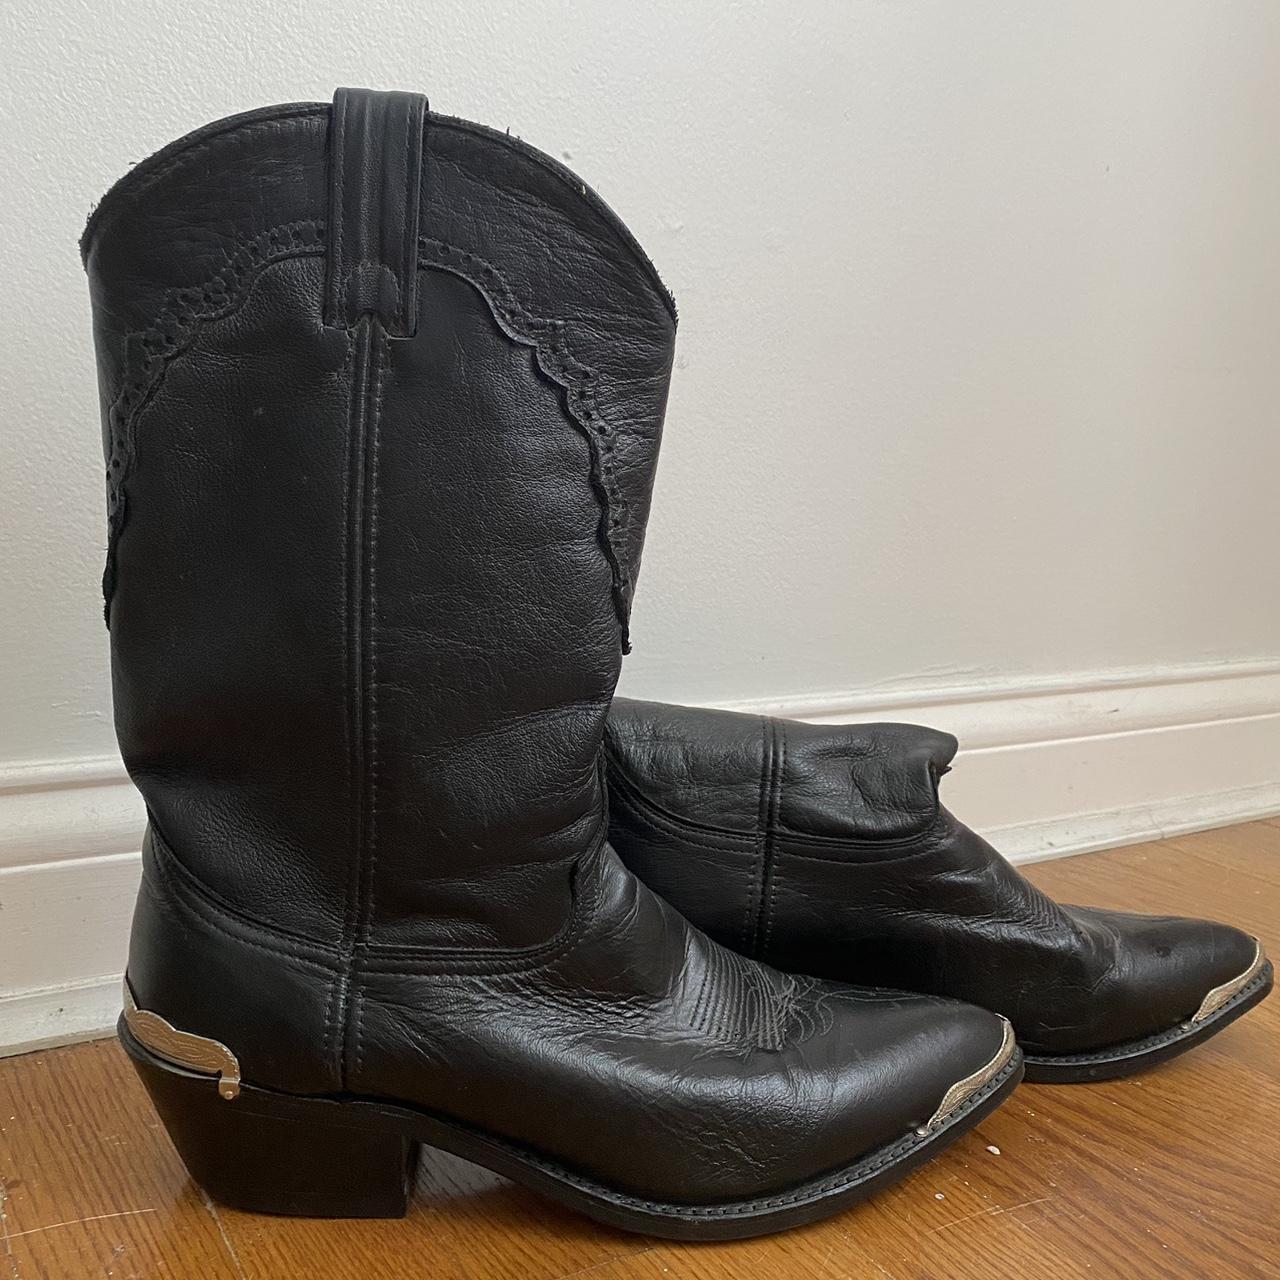 Vintage Men’s Black Cowboy Boots. Women could wear... - Depop